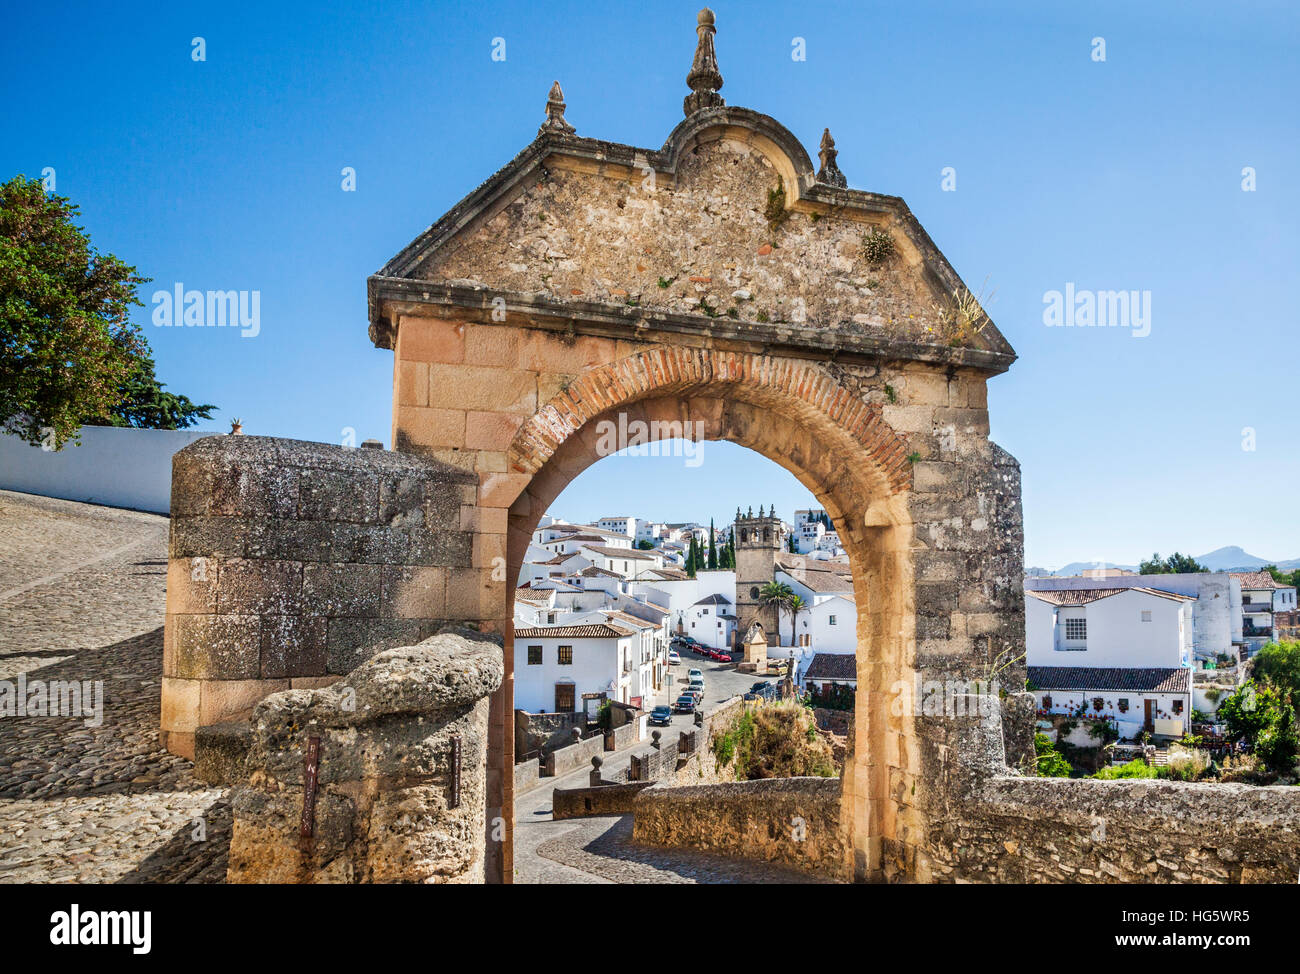 Spain, Andalusia, Province of Malaga, Ronda, Iglesia de Nuestro Padre Jesus and Puente Viejo (Old Bridge), across El Tajo Gorge Stock Photo